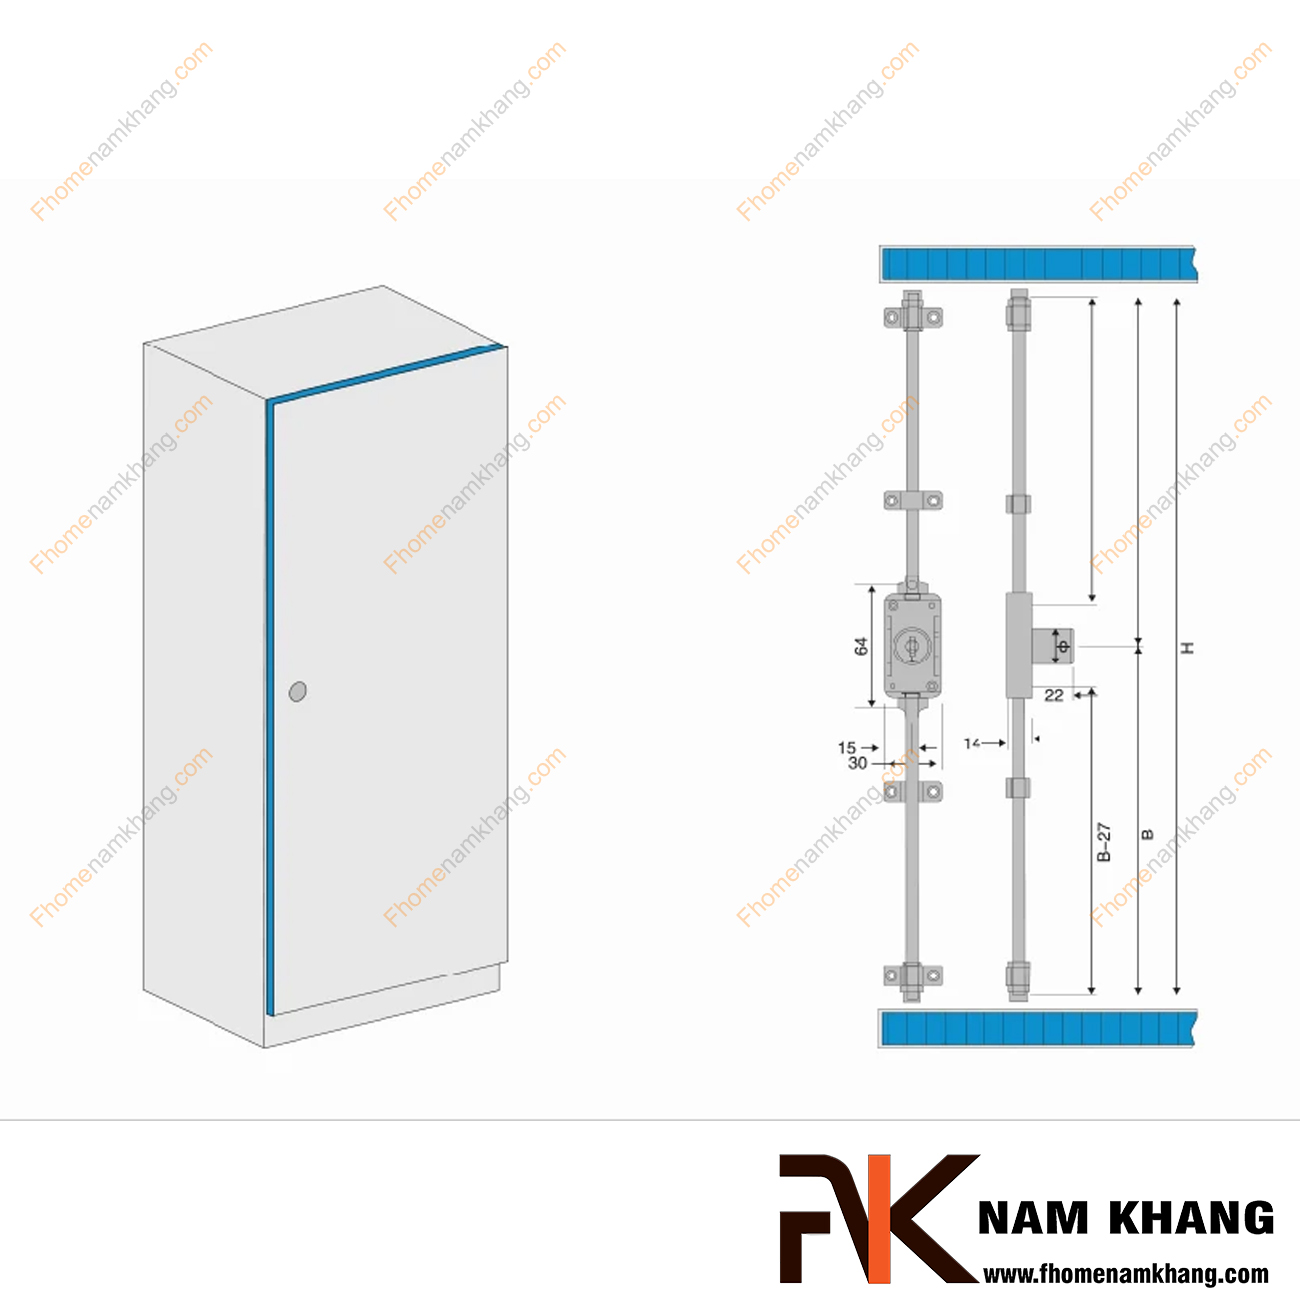 Khóa cửa tủ - Khóa cây ty NK709-KCT-dòng khóa tủ nhỏ thông dụng được sử dụng rất nhiều trên thị trường. Dạng khóa cửa tủ này chuyên sử dụng cho cửa tủ 2 cánh cỡ lớn.